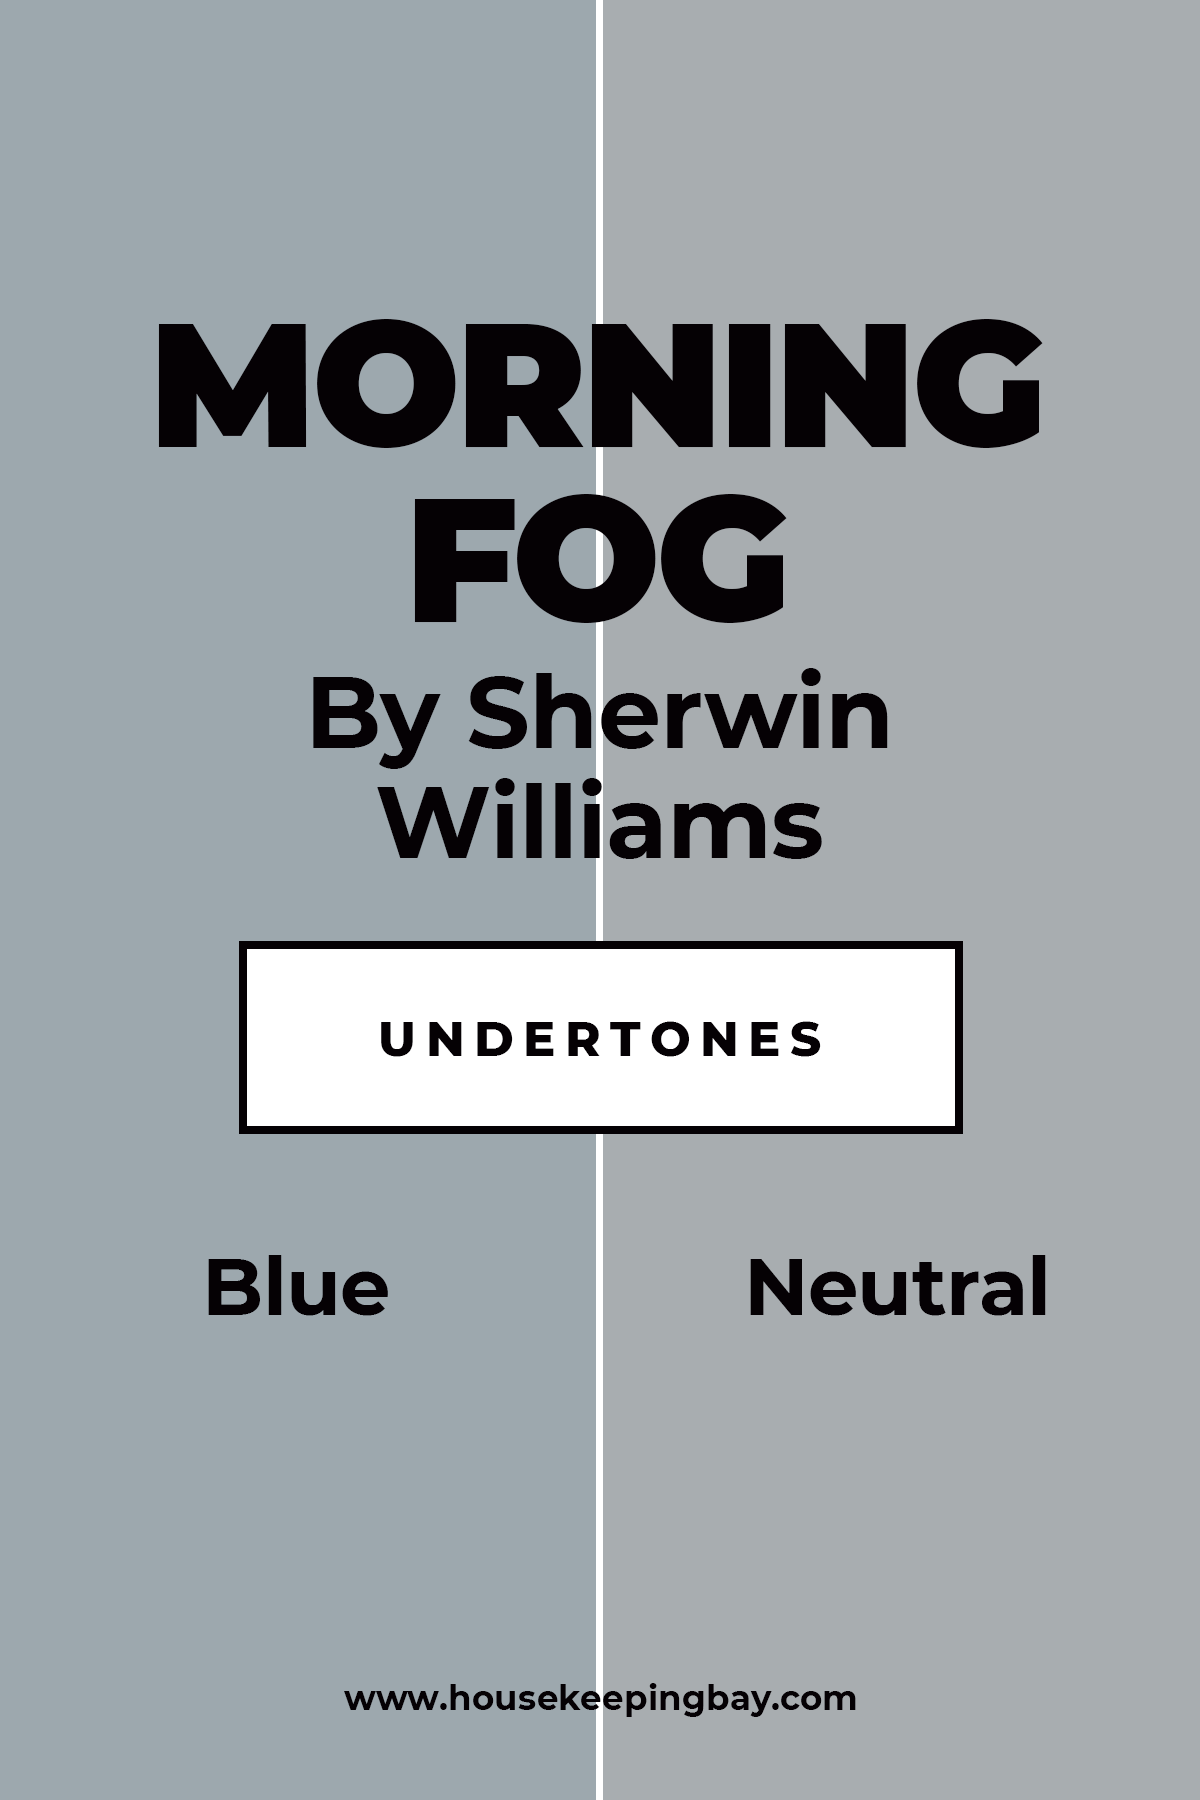 Morning Fog Undertones